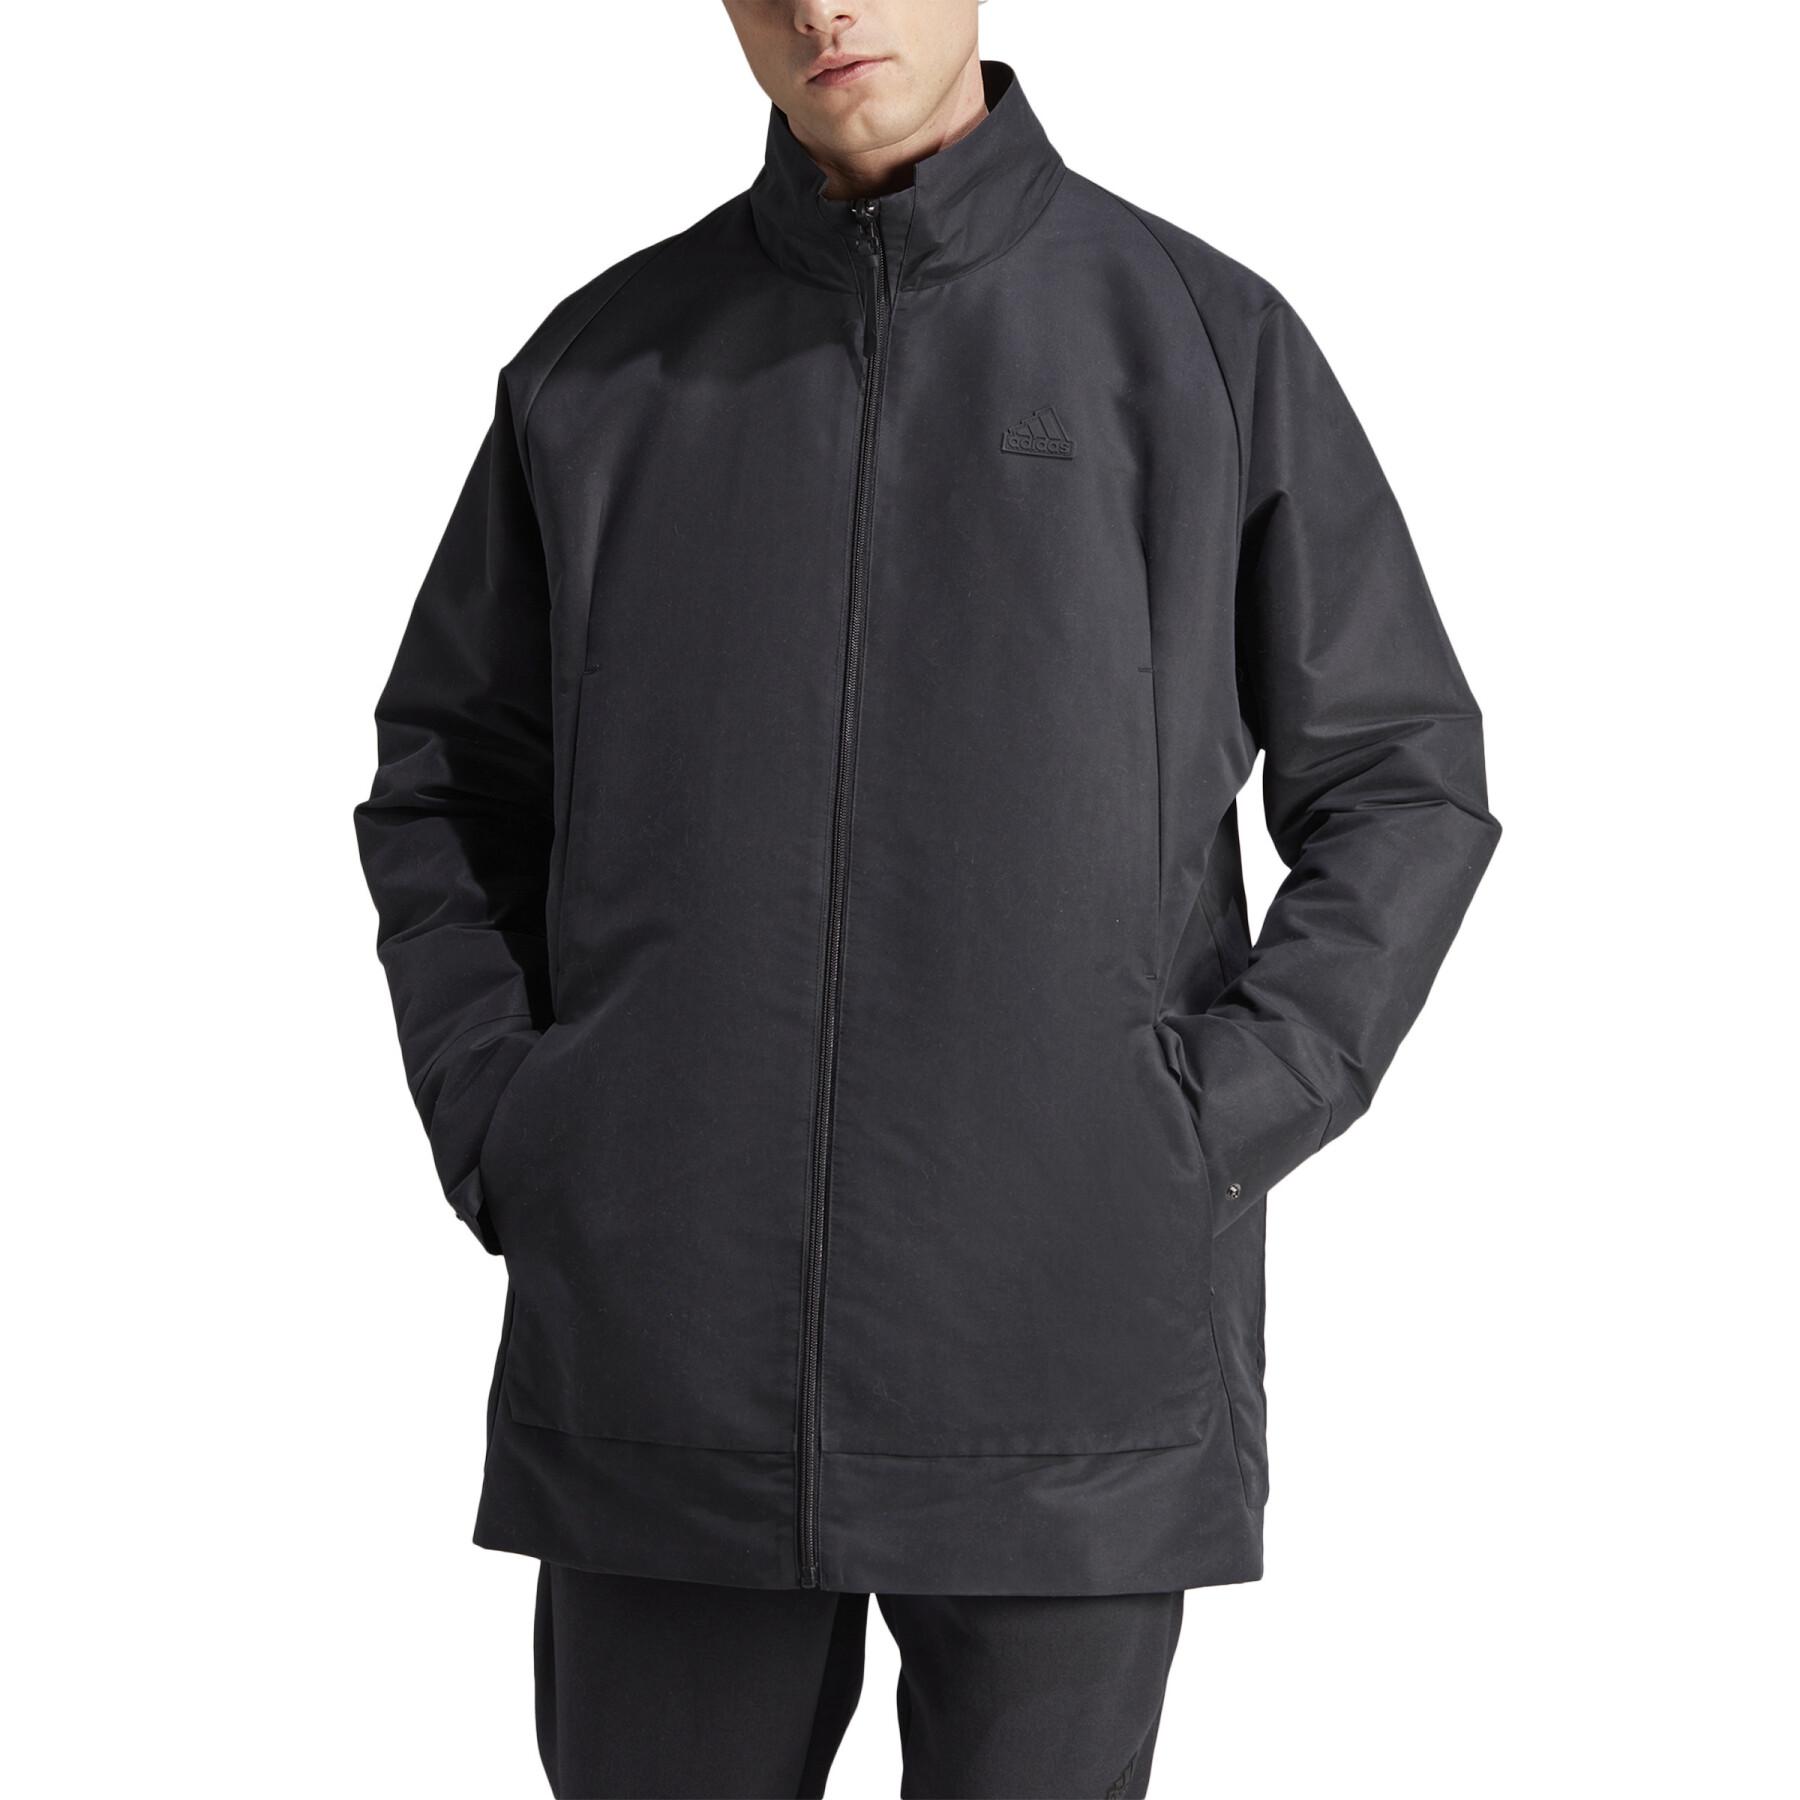 Waterproof zip jacket adidas Z.N.E. Premium